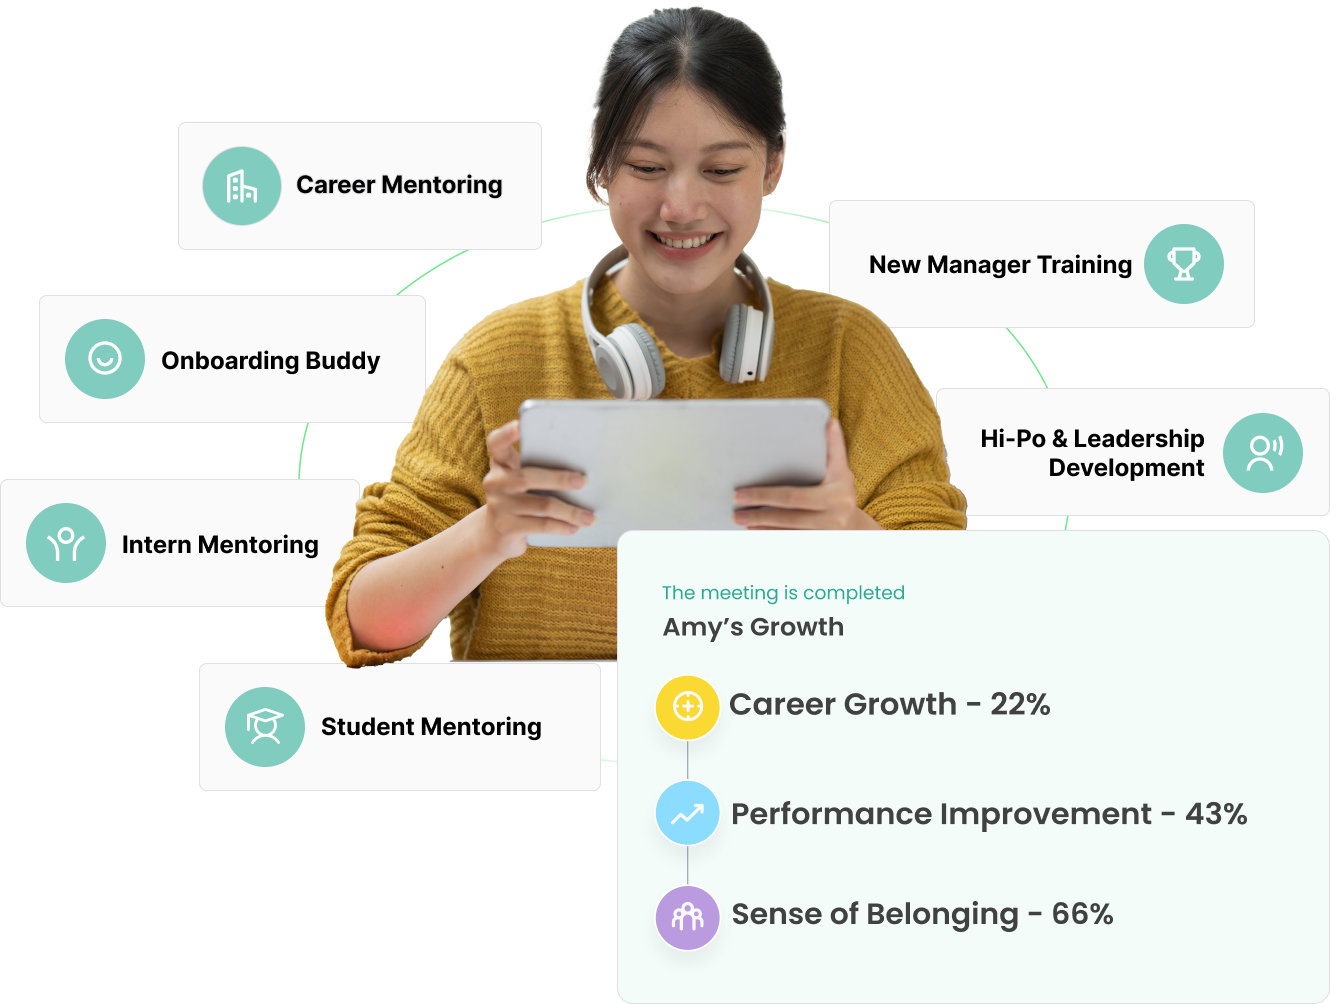 employee growth plan through mentoring program on Qooper mentoring platform